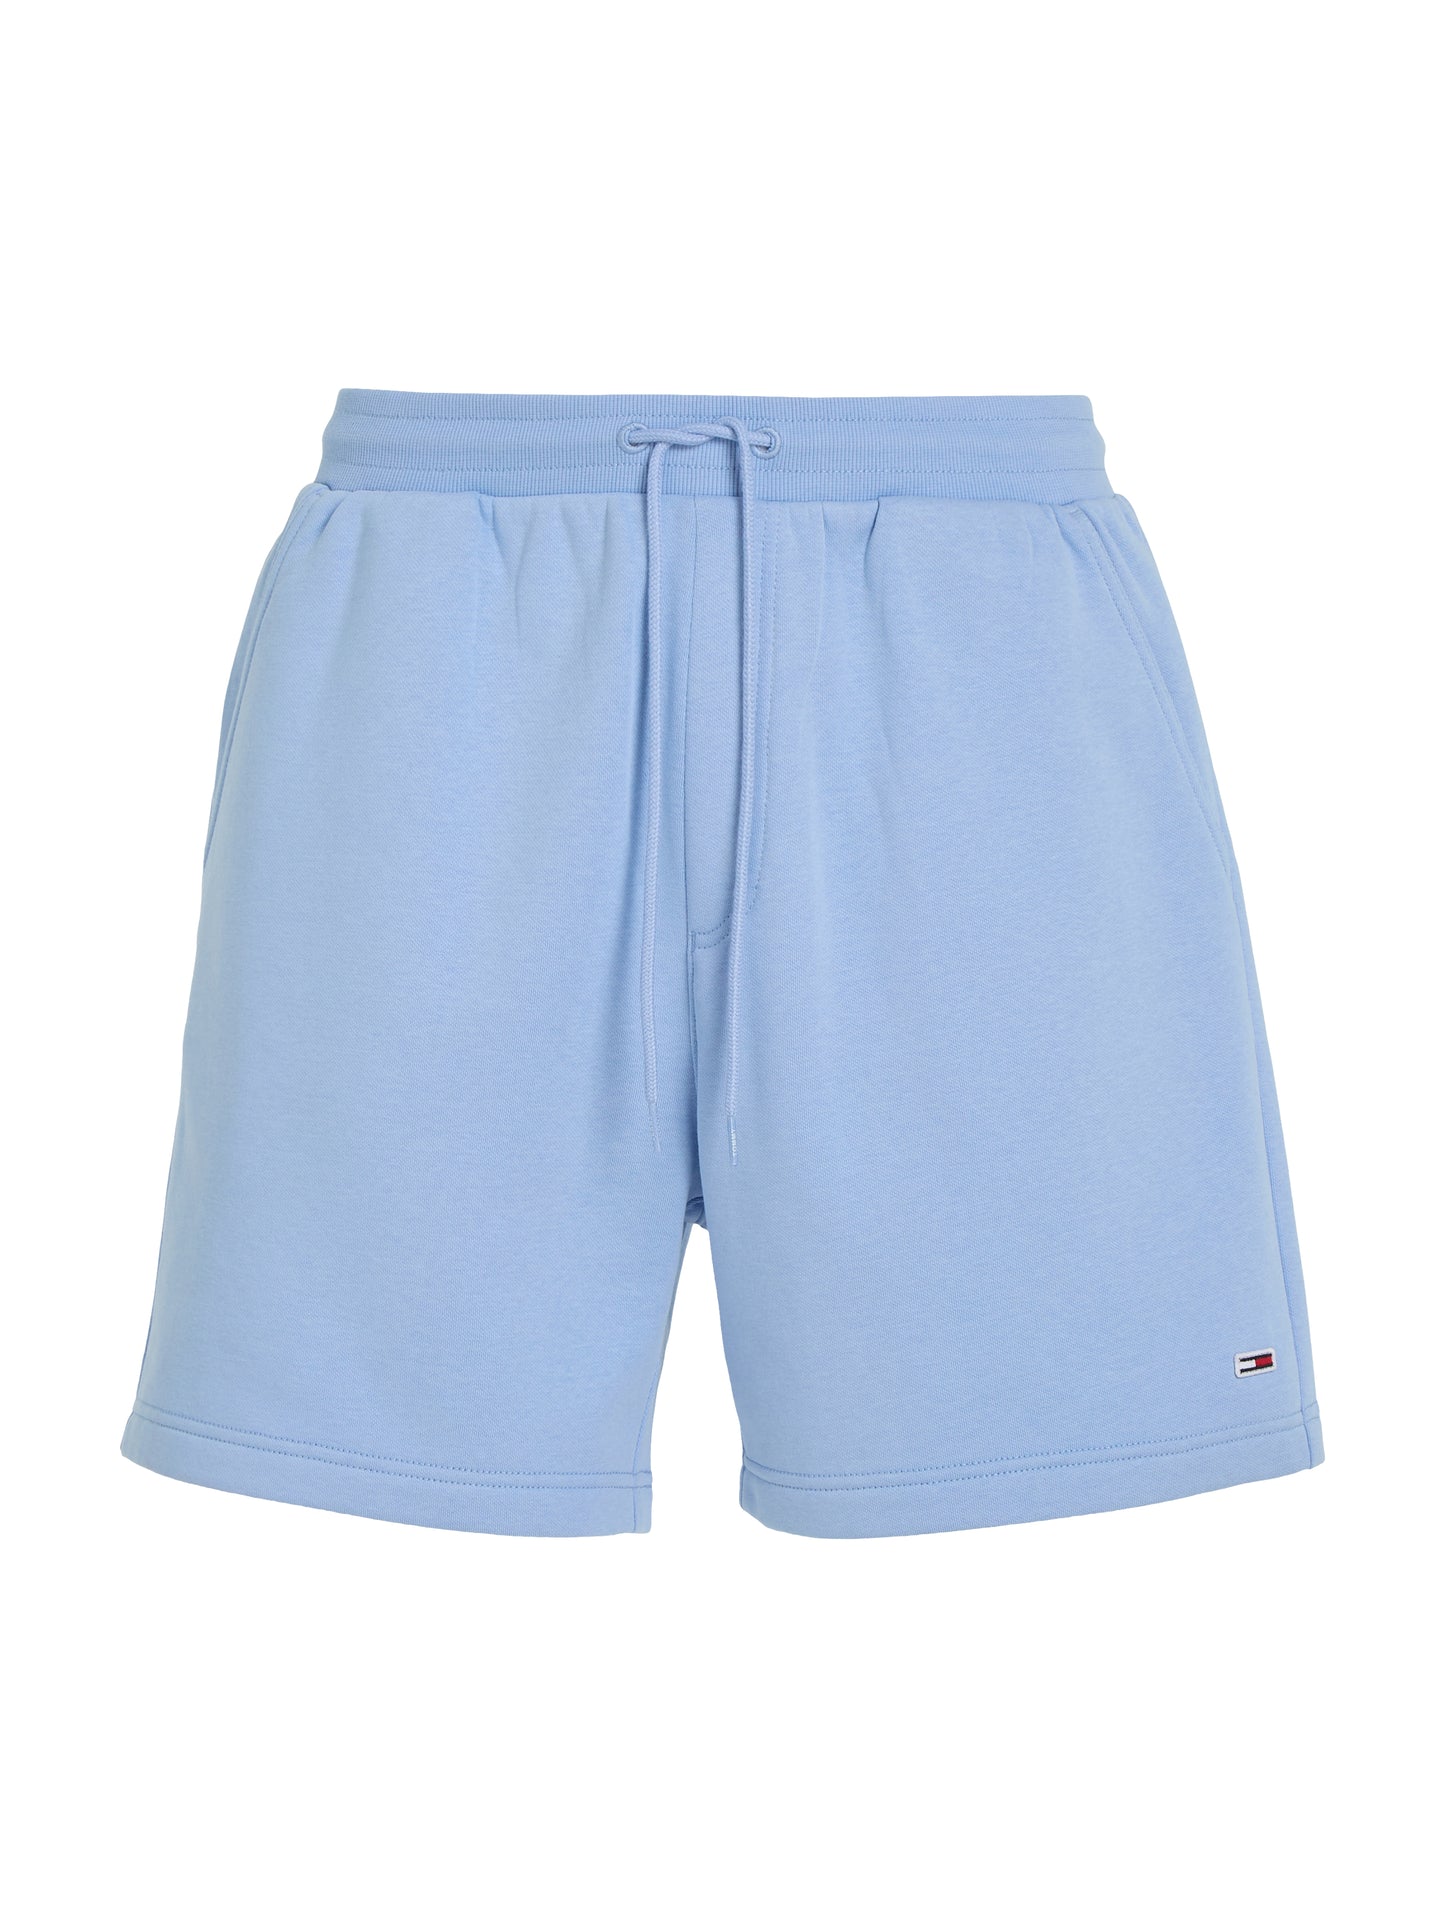 Tommy Jeans Mens Fleece Beach Short - Moderate Blue